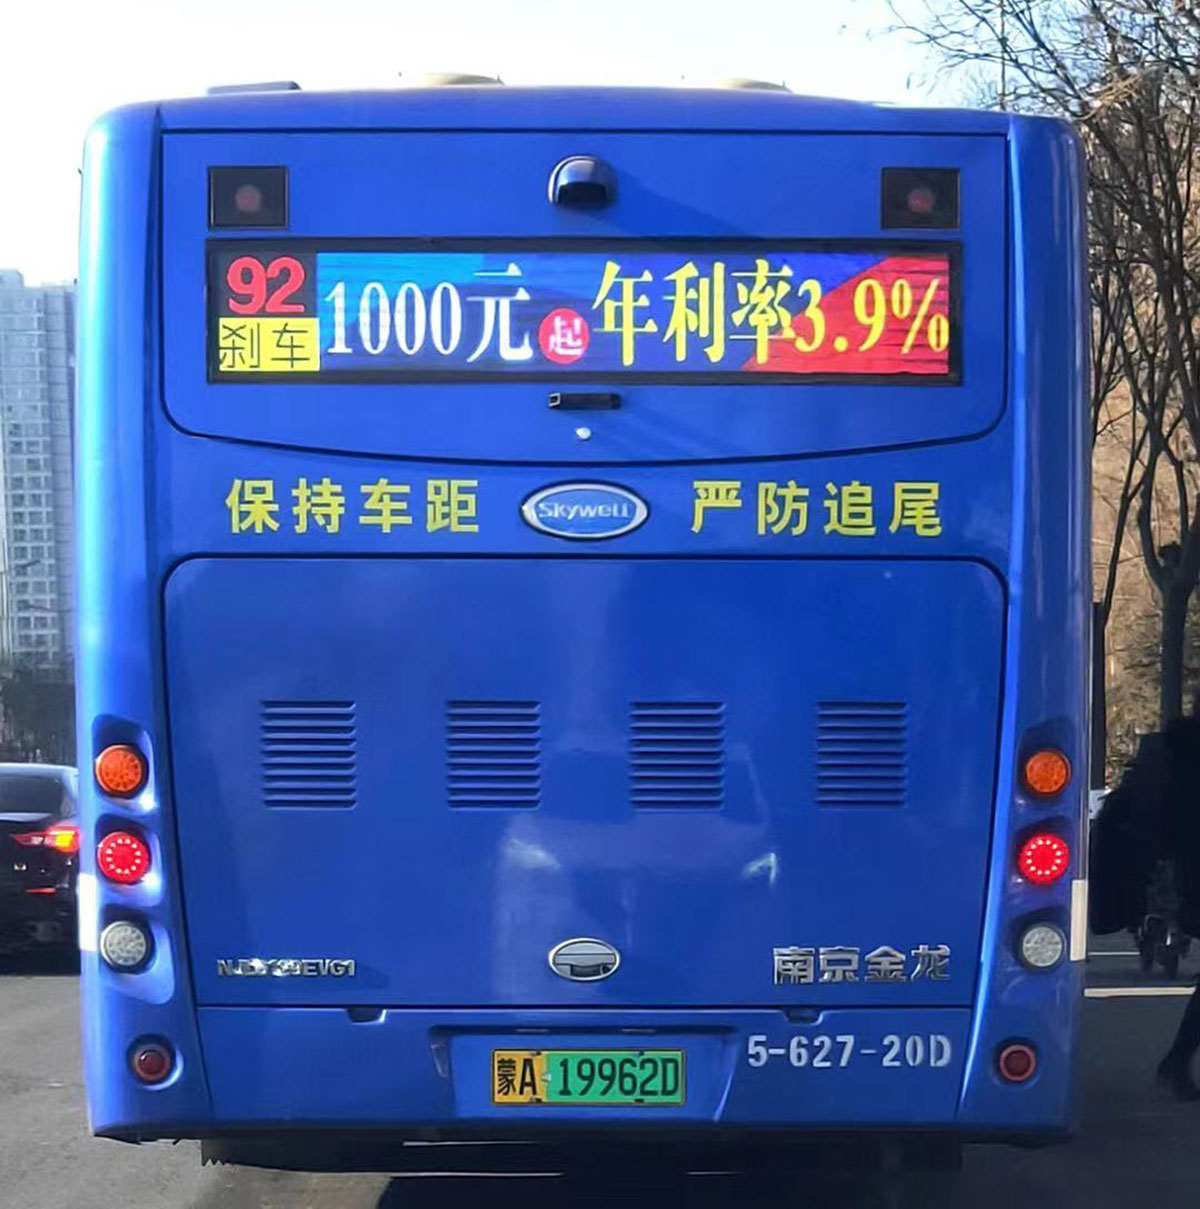 公交車(chē)車(chē)内廣告